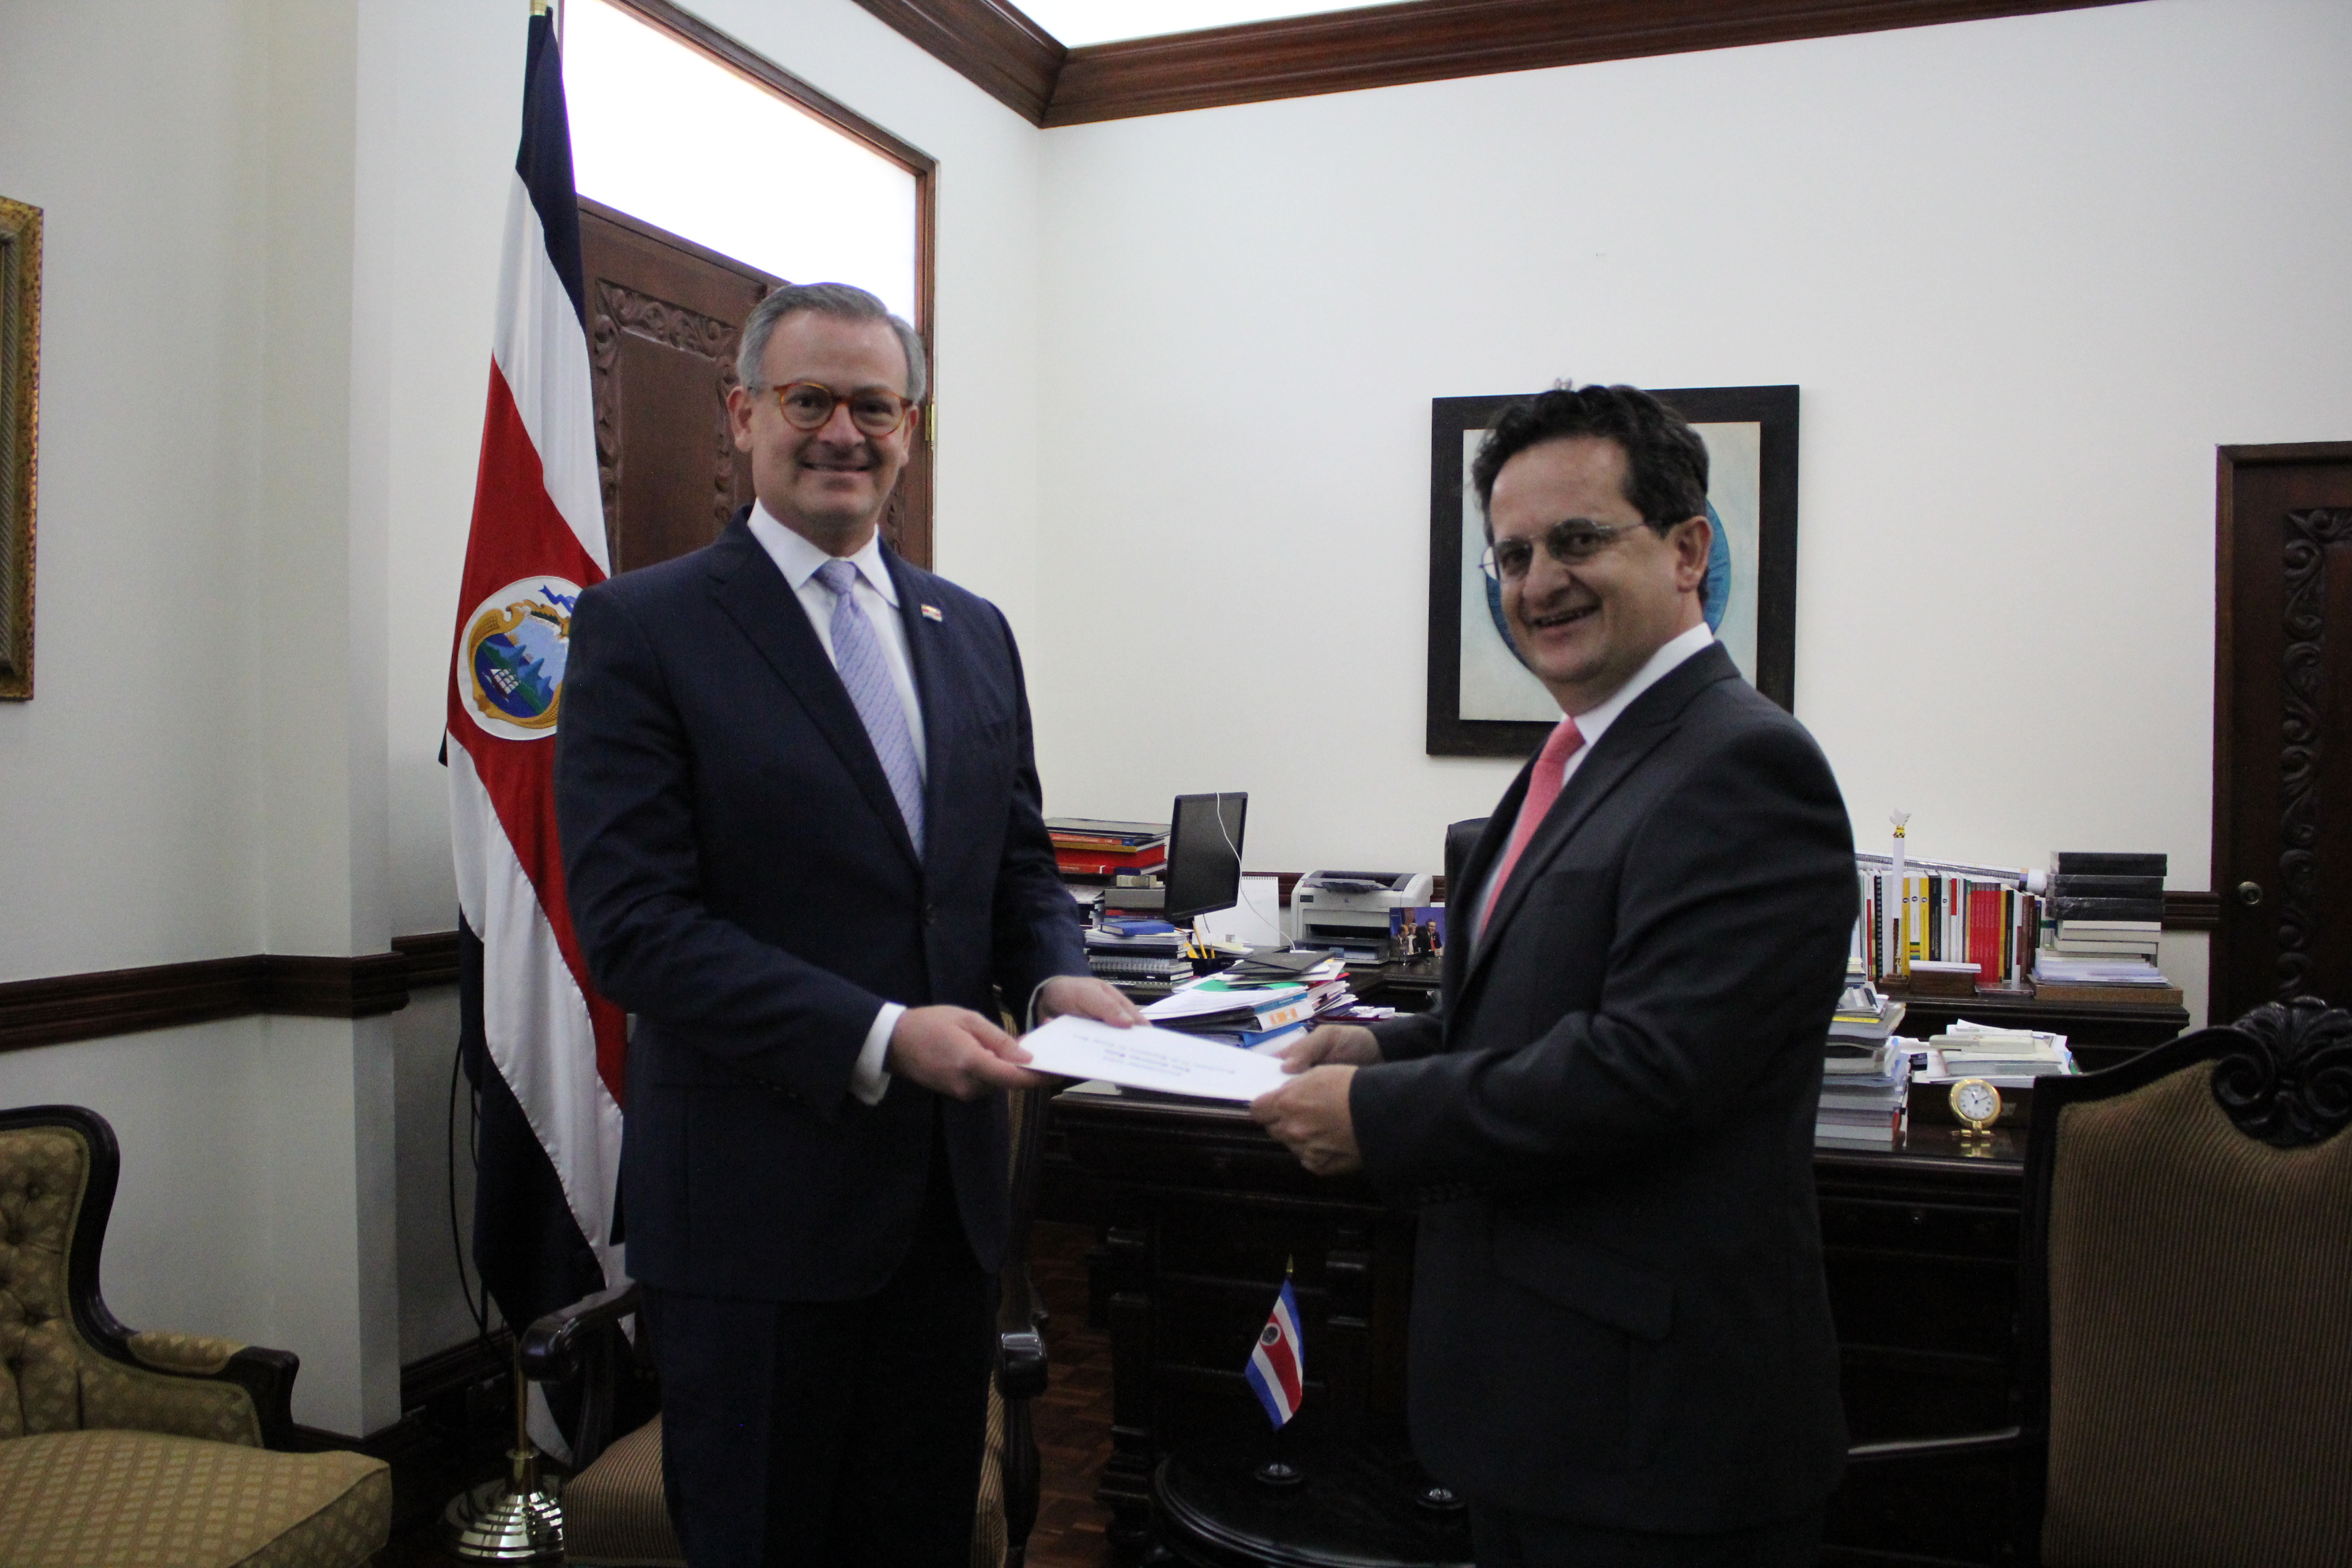 Embajador de Colombia en Costa Rica, Ricardo Lozano Forero, presentó copias de cartas credenciales al Ministro de Relaciones Exteriores, Manuel A. González Sanz